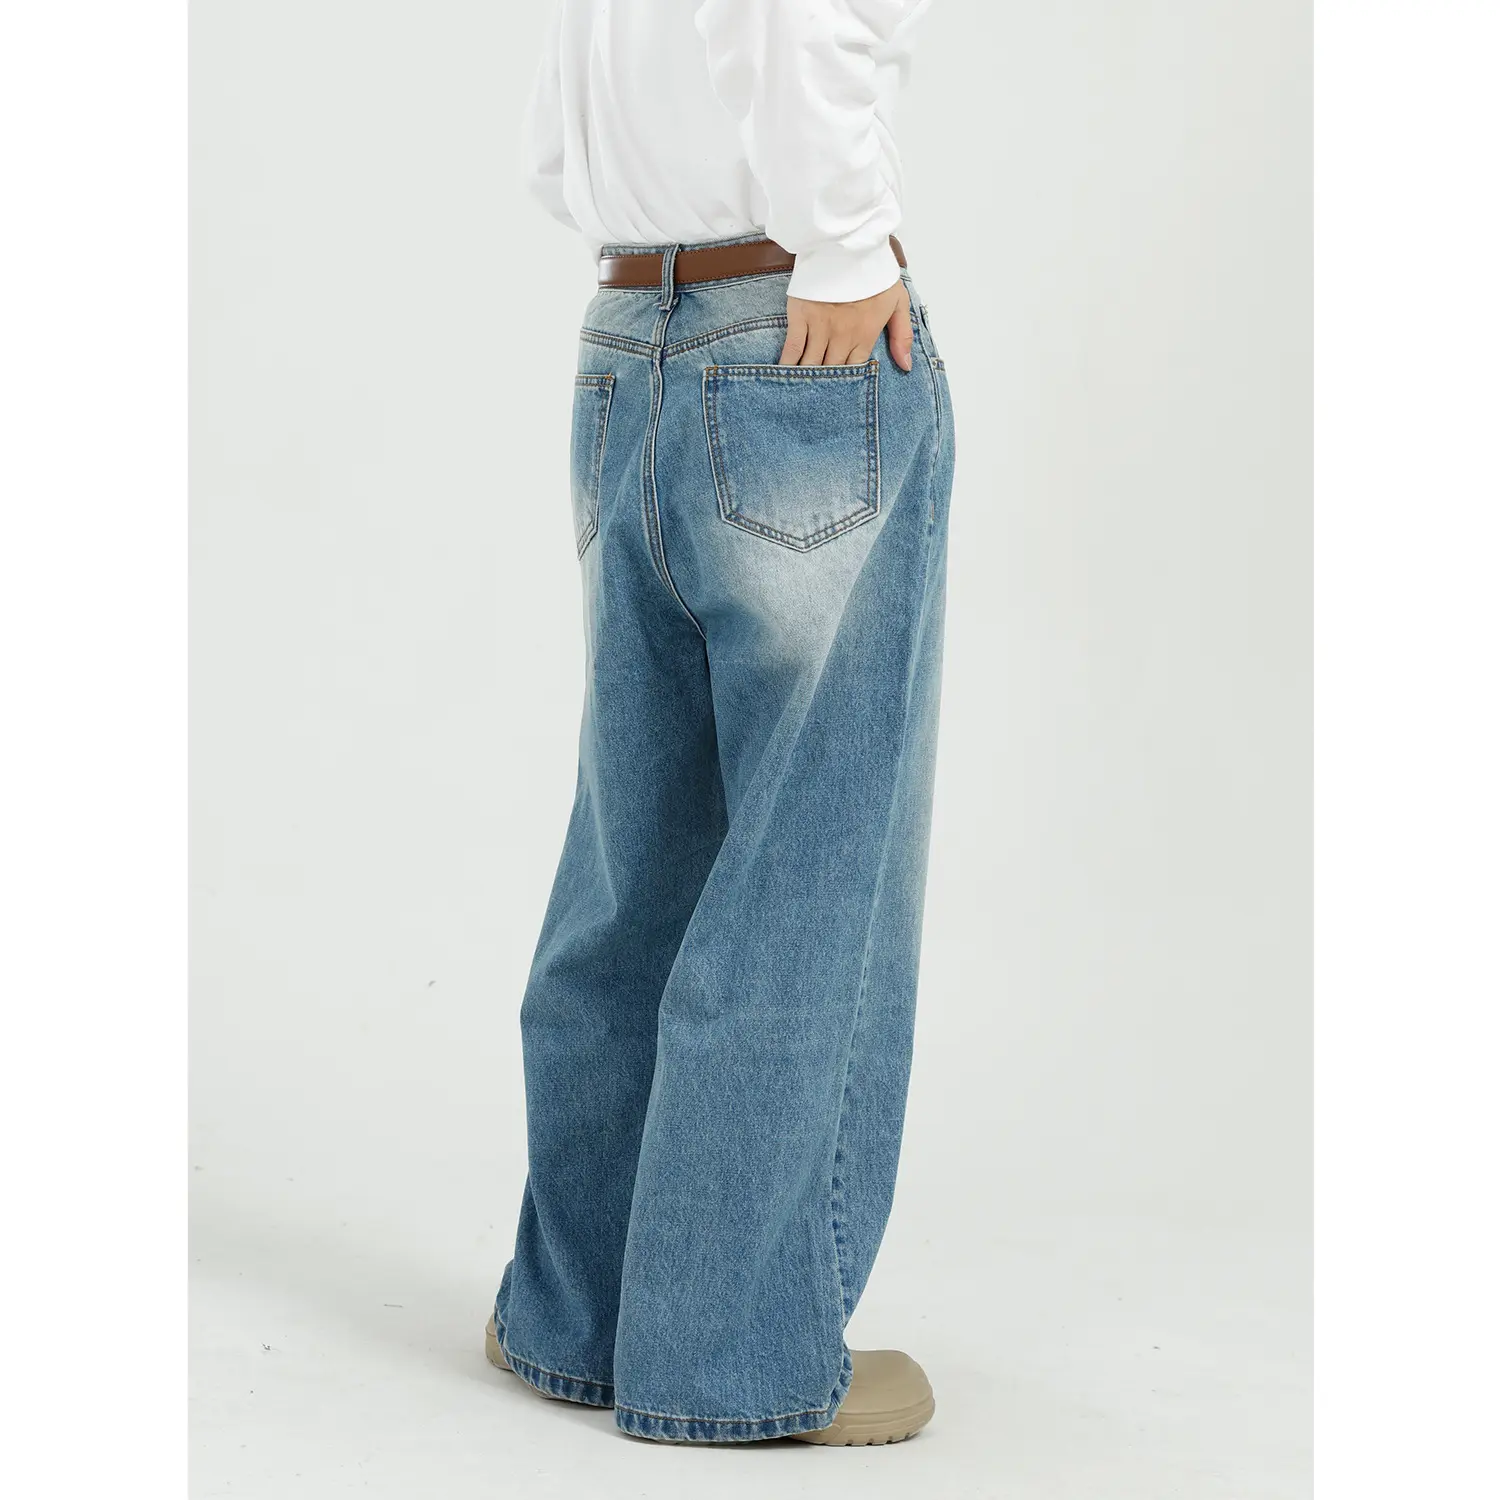 DOMAX moda erkekler yıkama tasarımcı Baggie alevlendi mavi gevşek Fit sıkıntılı Denim vahşi bacak pantolon kot erkekler için yeni moda